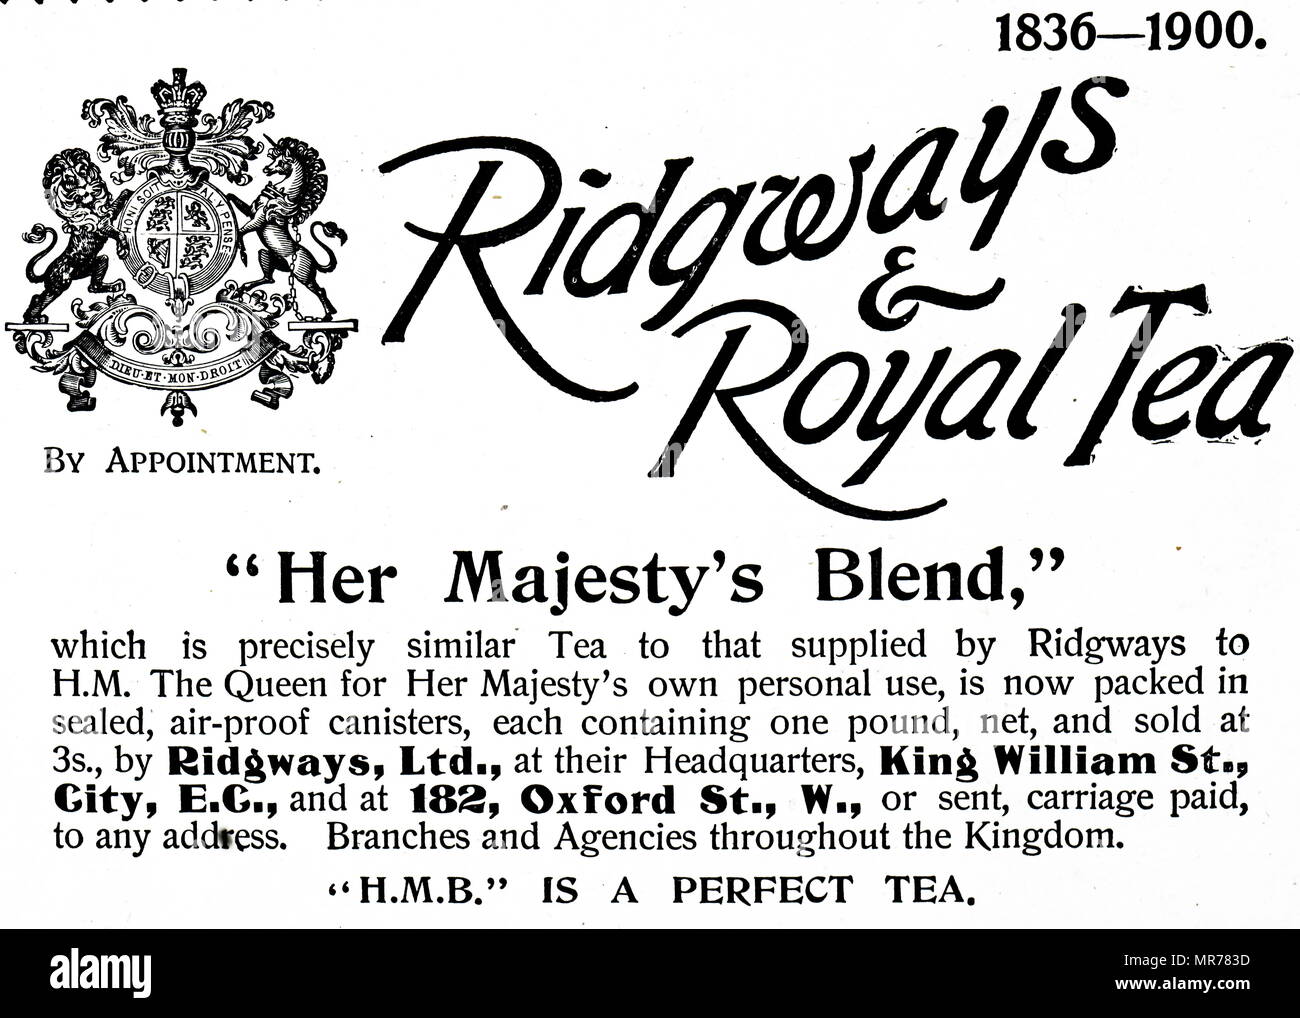 Werbung für Ridgway & Royal Tea "Her Majesty's Blend". Vom 20. Jahrhundert Stockfoto